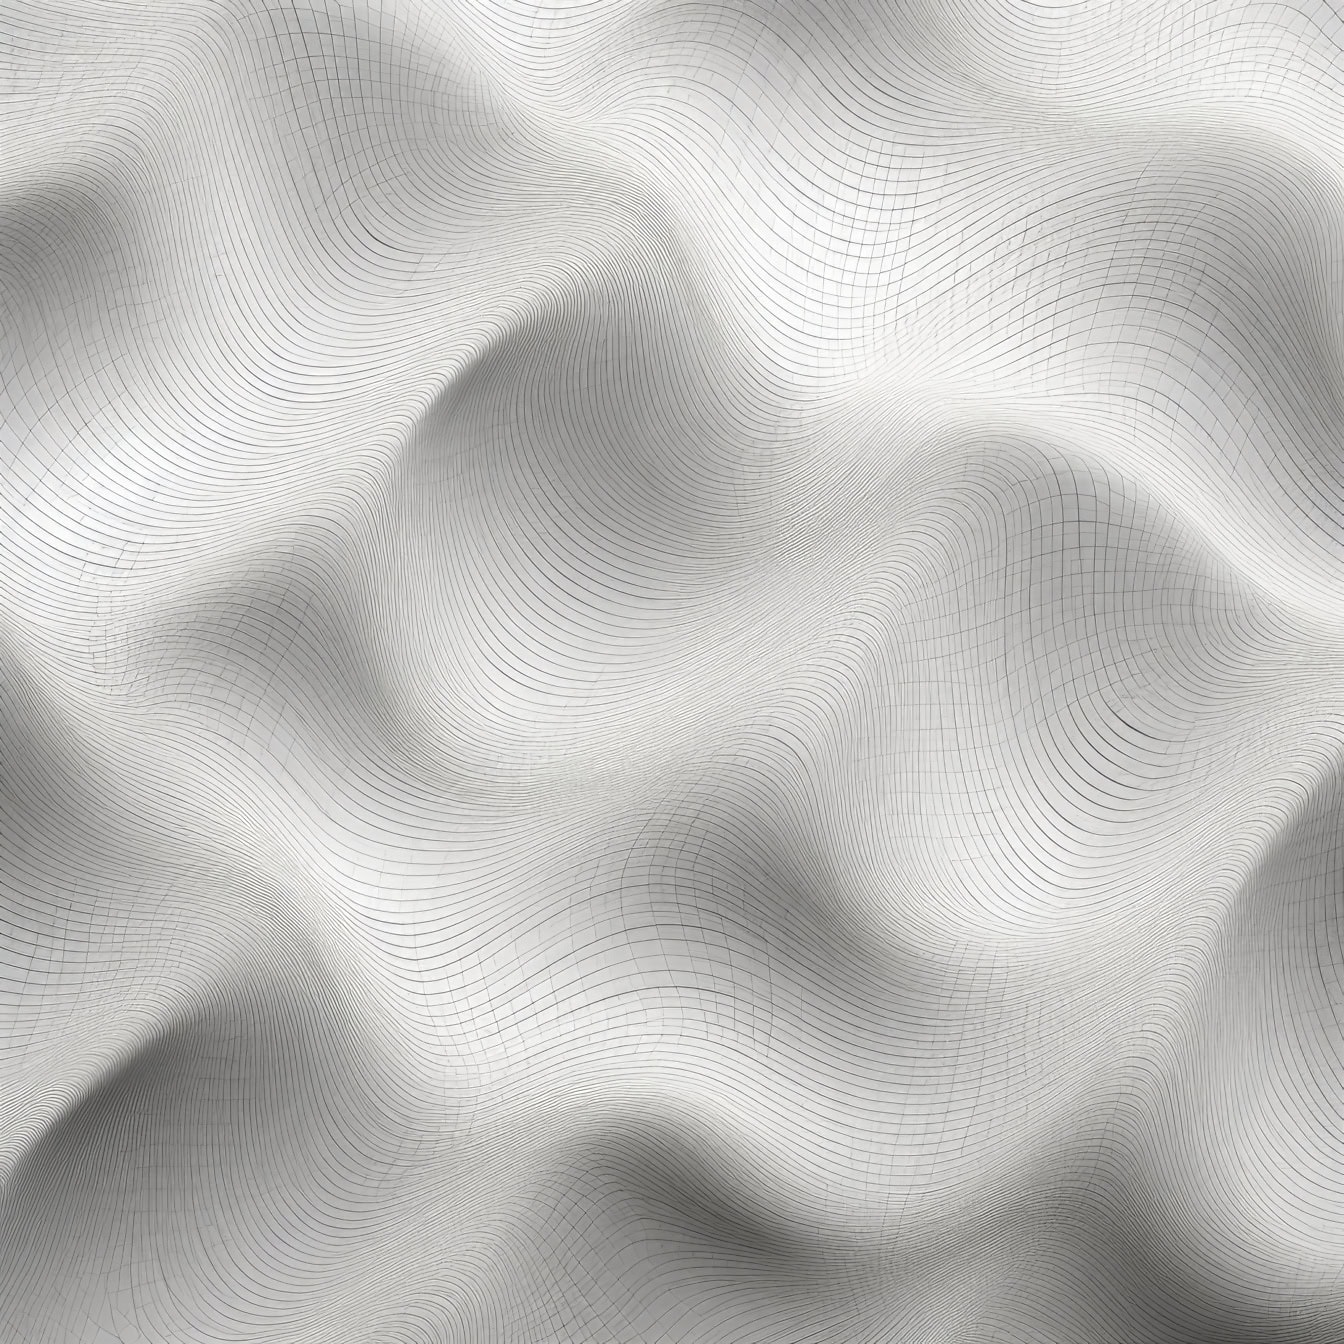 Textura de superficie blanca lisa con sutiles líneas negras finas de sombreado cruzado